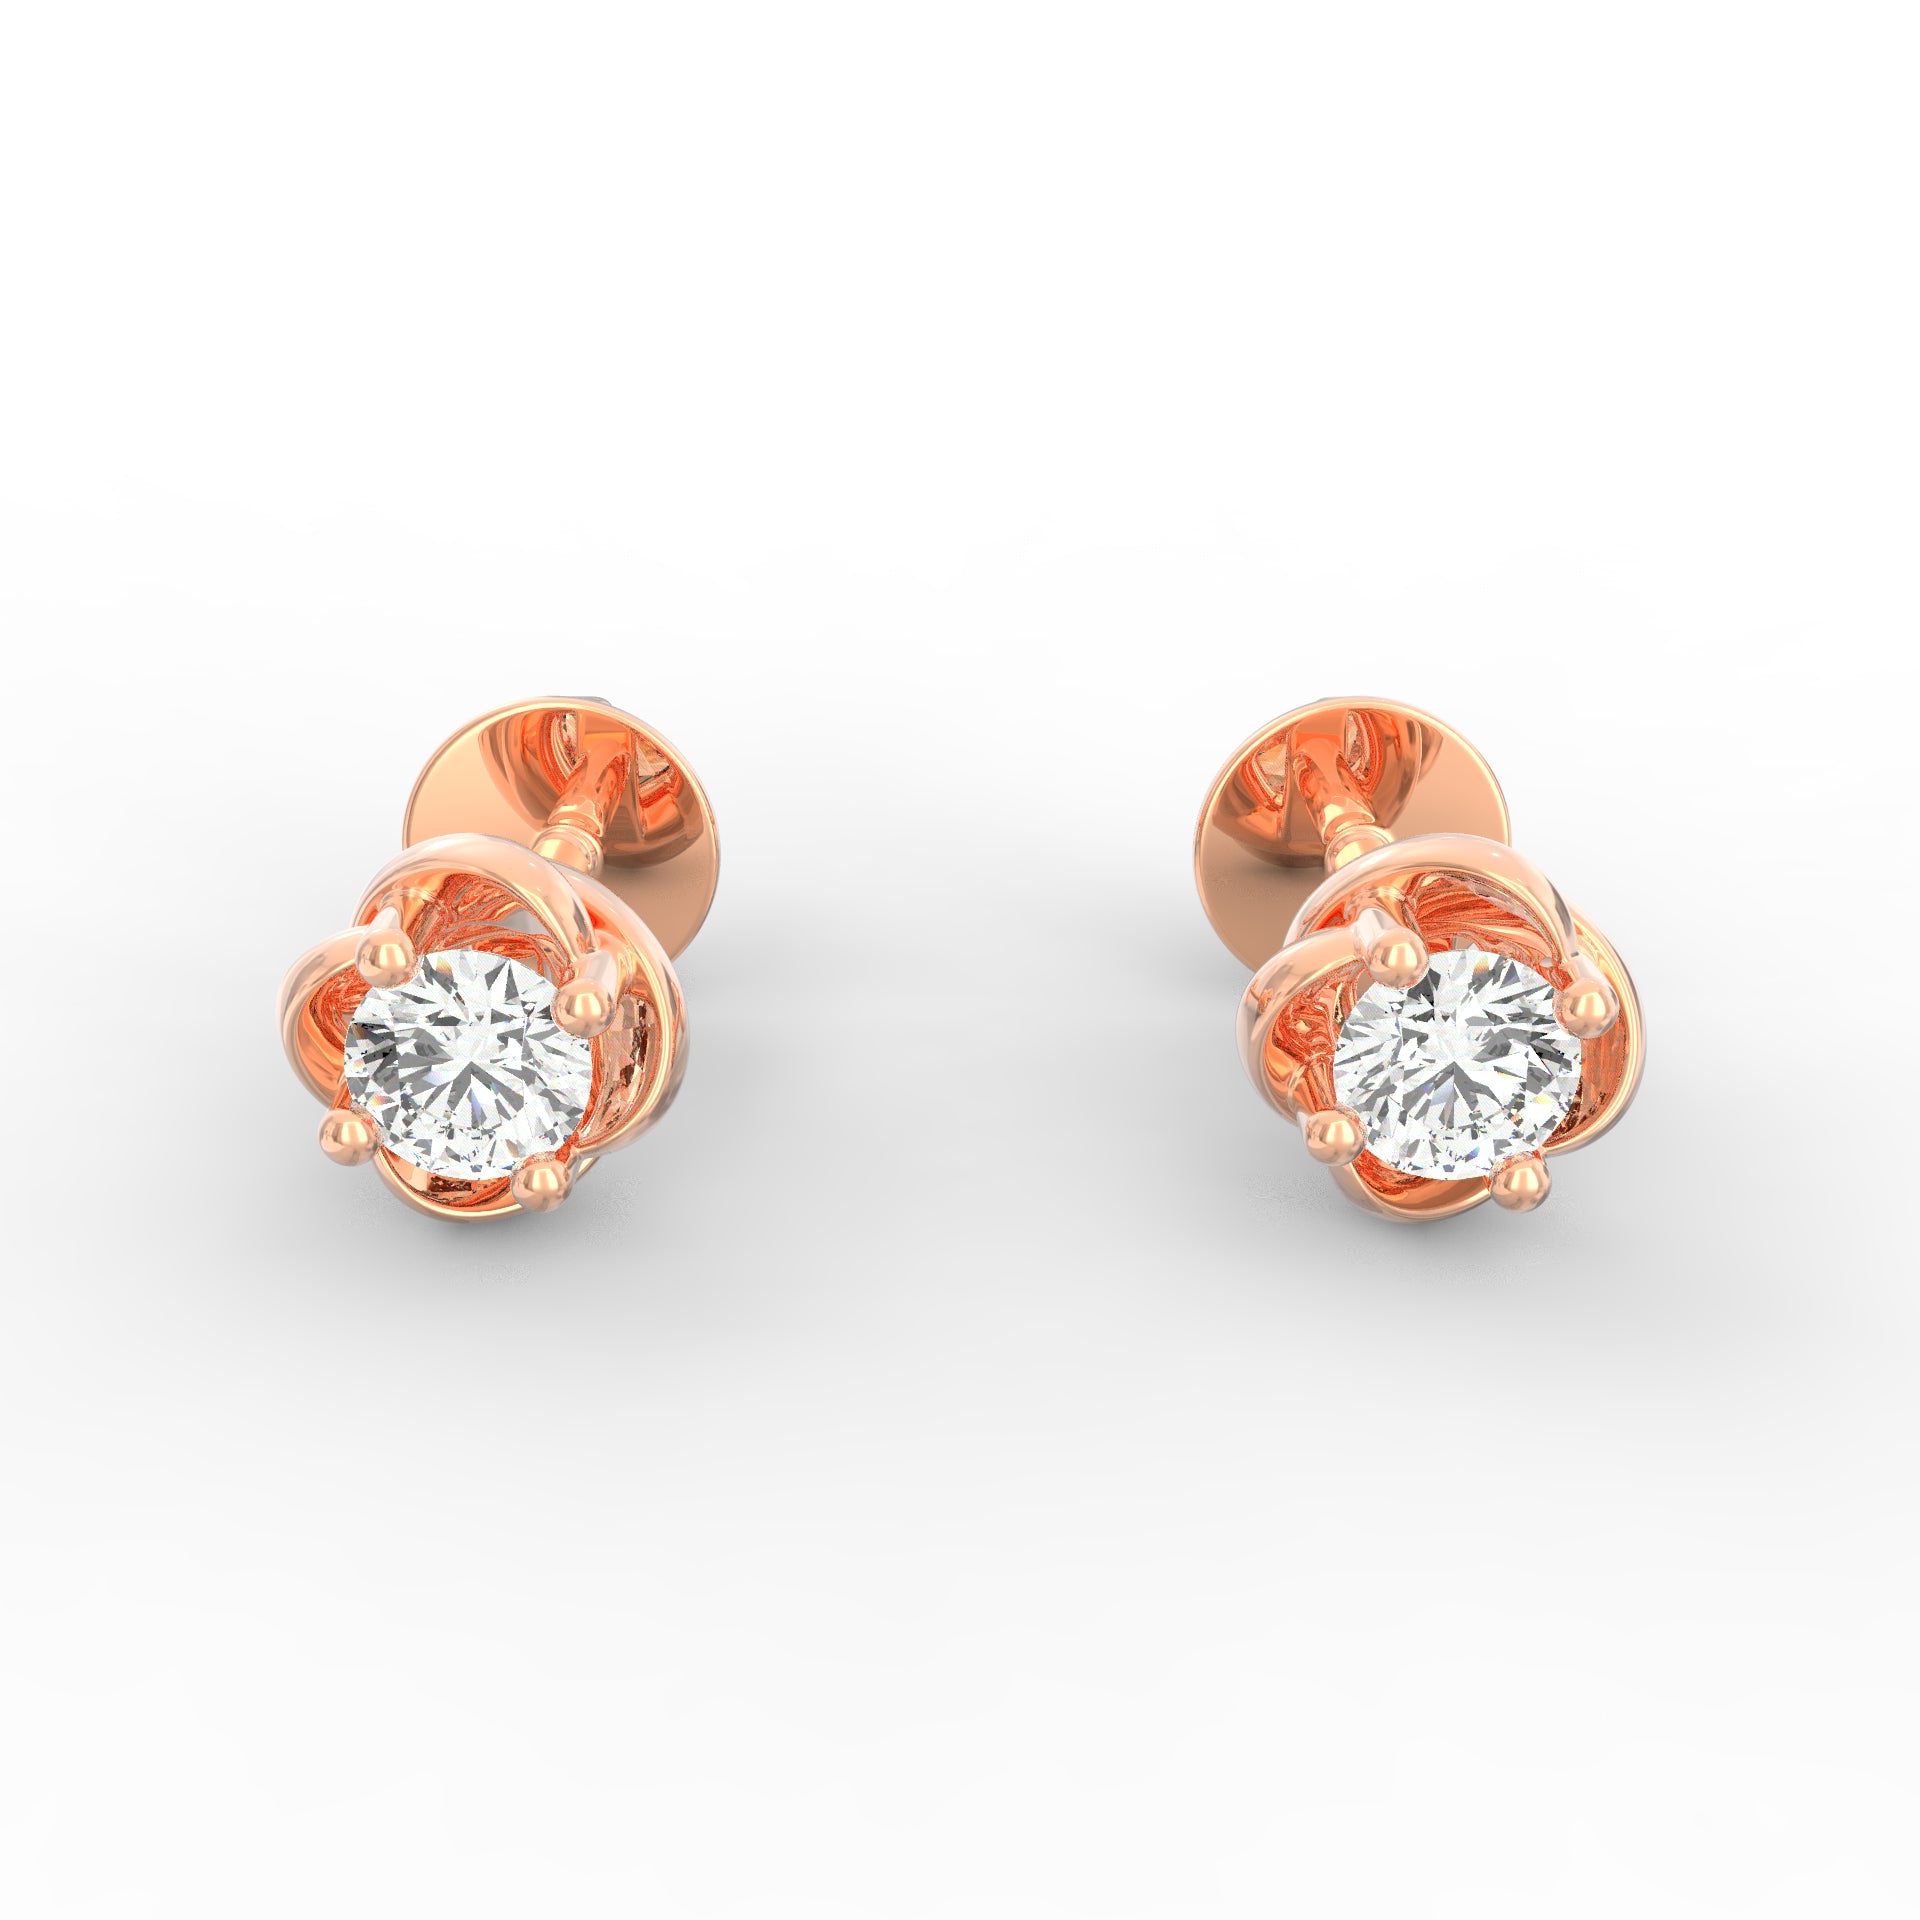 Buy 050 Cts Diamond Solitaire Earrings Er340 Diamond Earrings  Surat  Diamond Jewelry